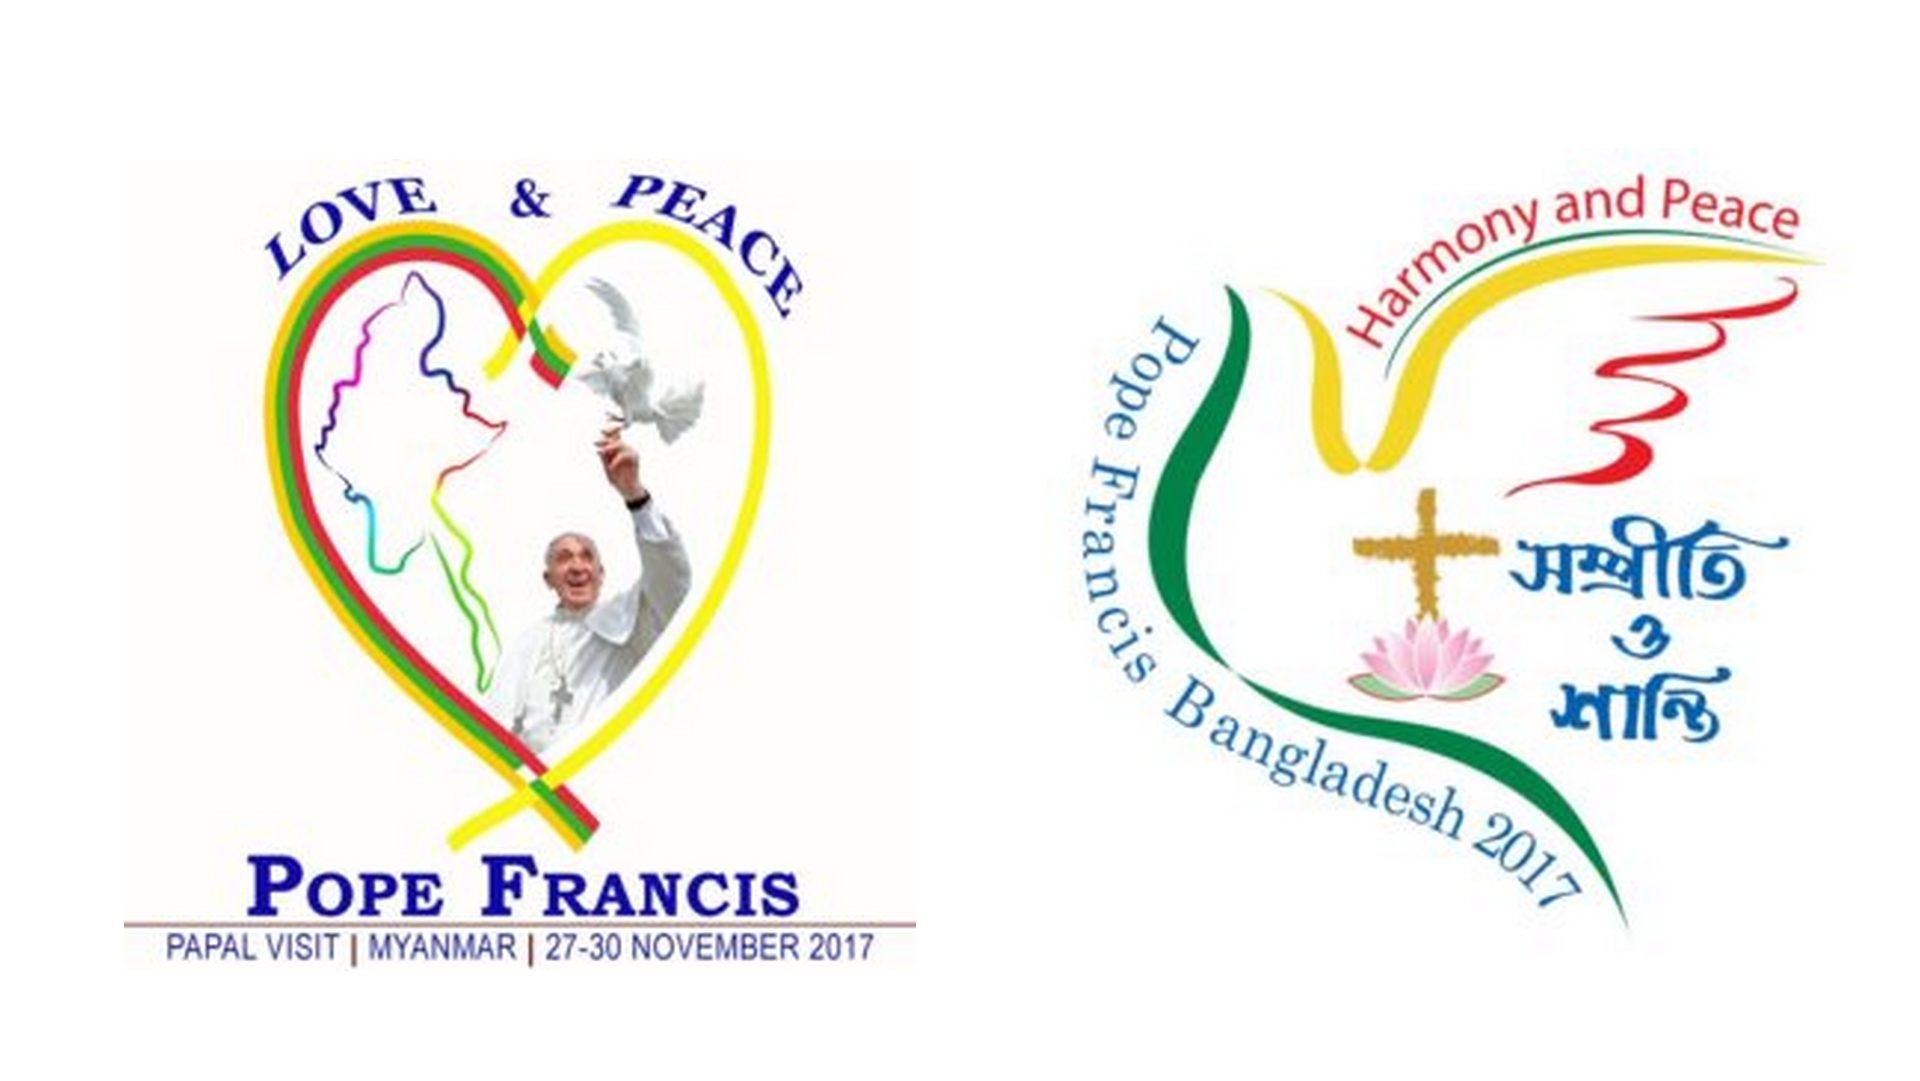 Le pape François se rendra au Myanmar et au Bangladesh du 27 novembre au 2 décembre 2017 